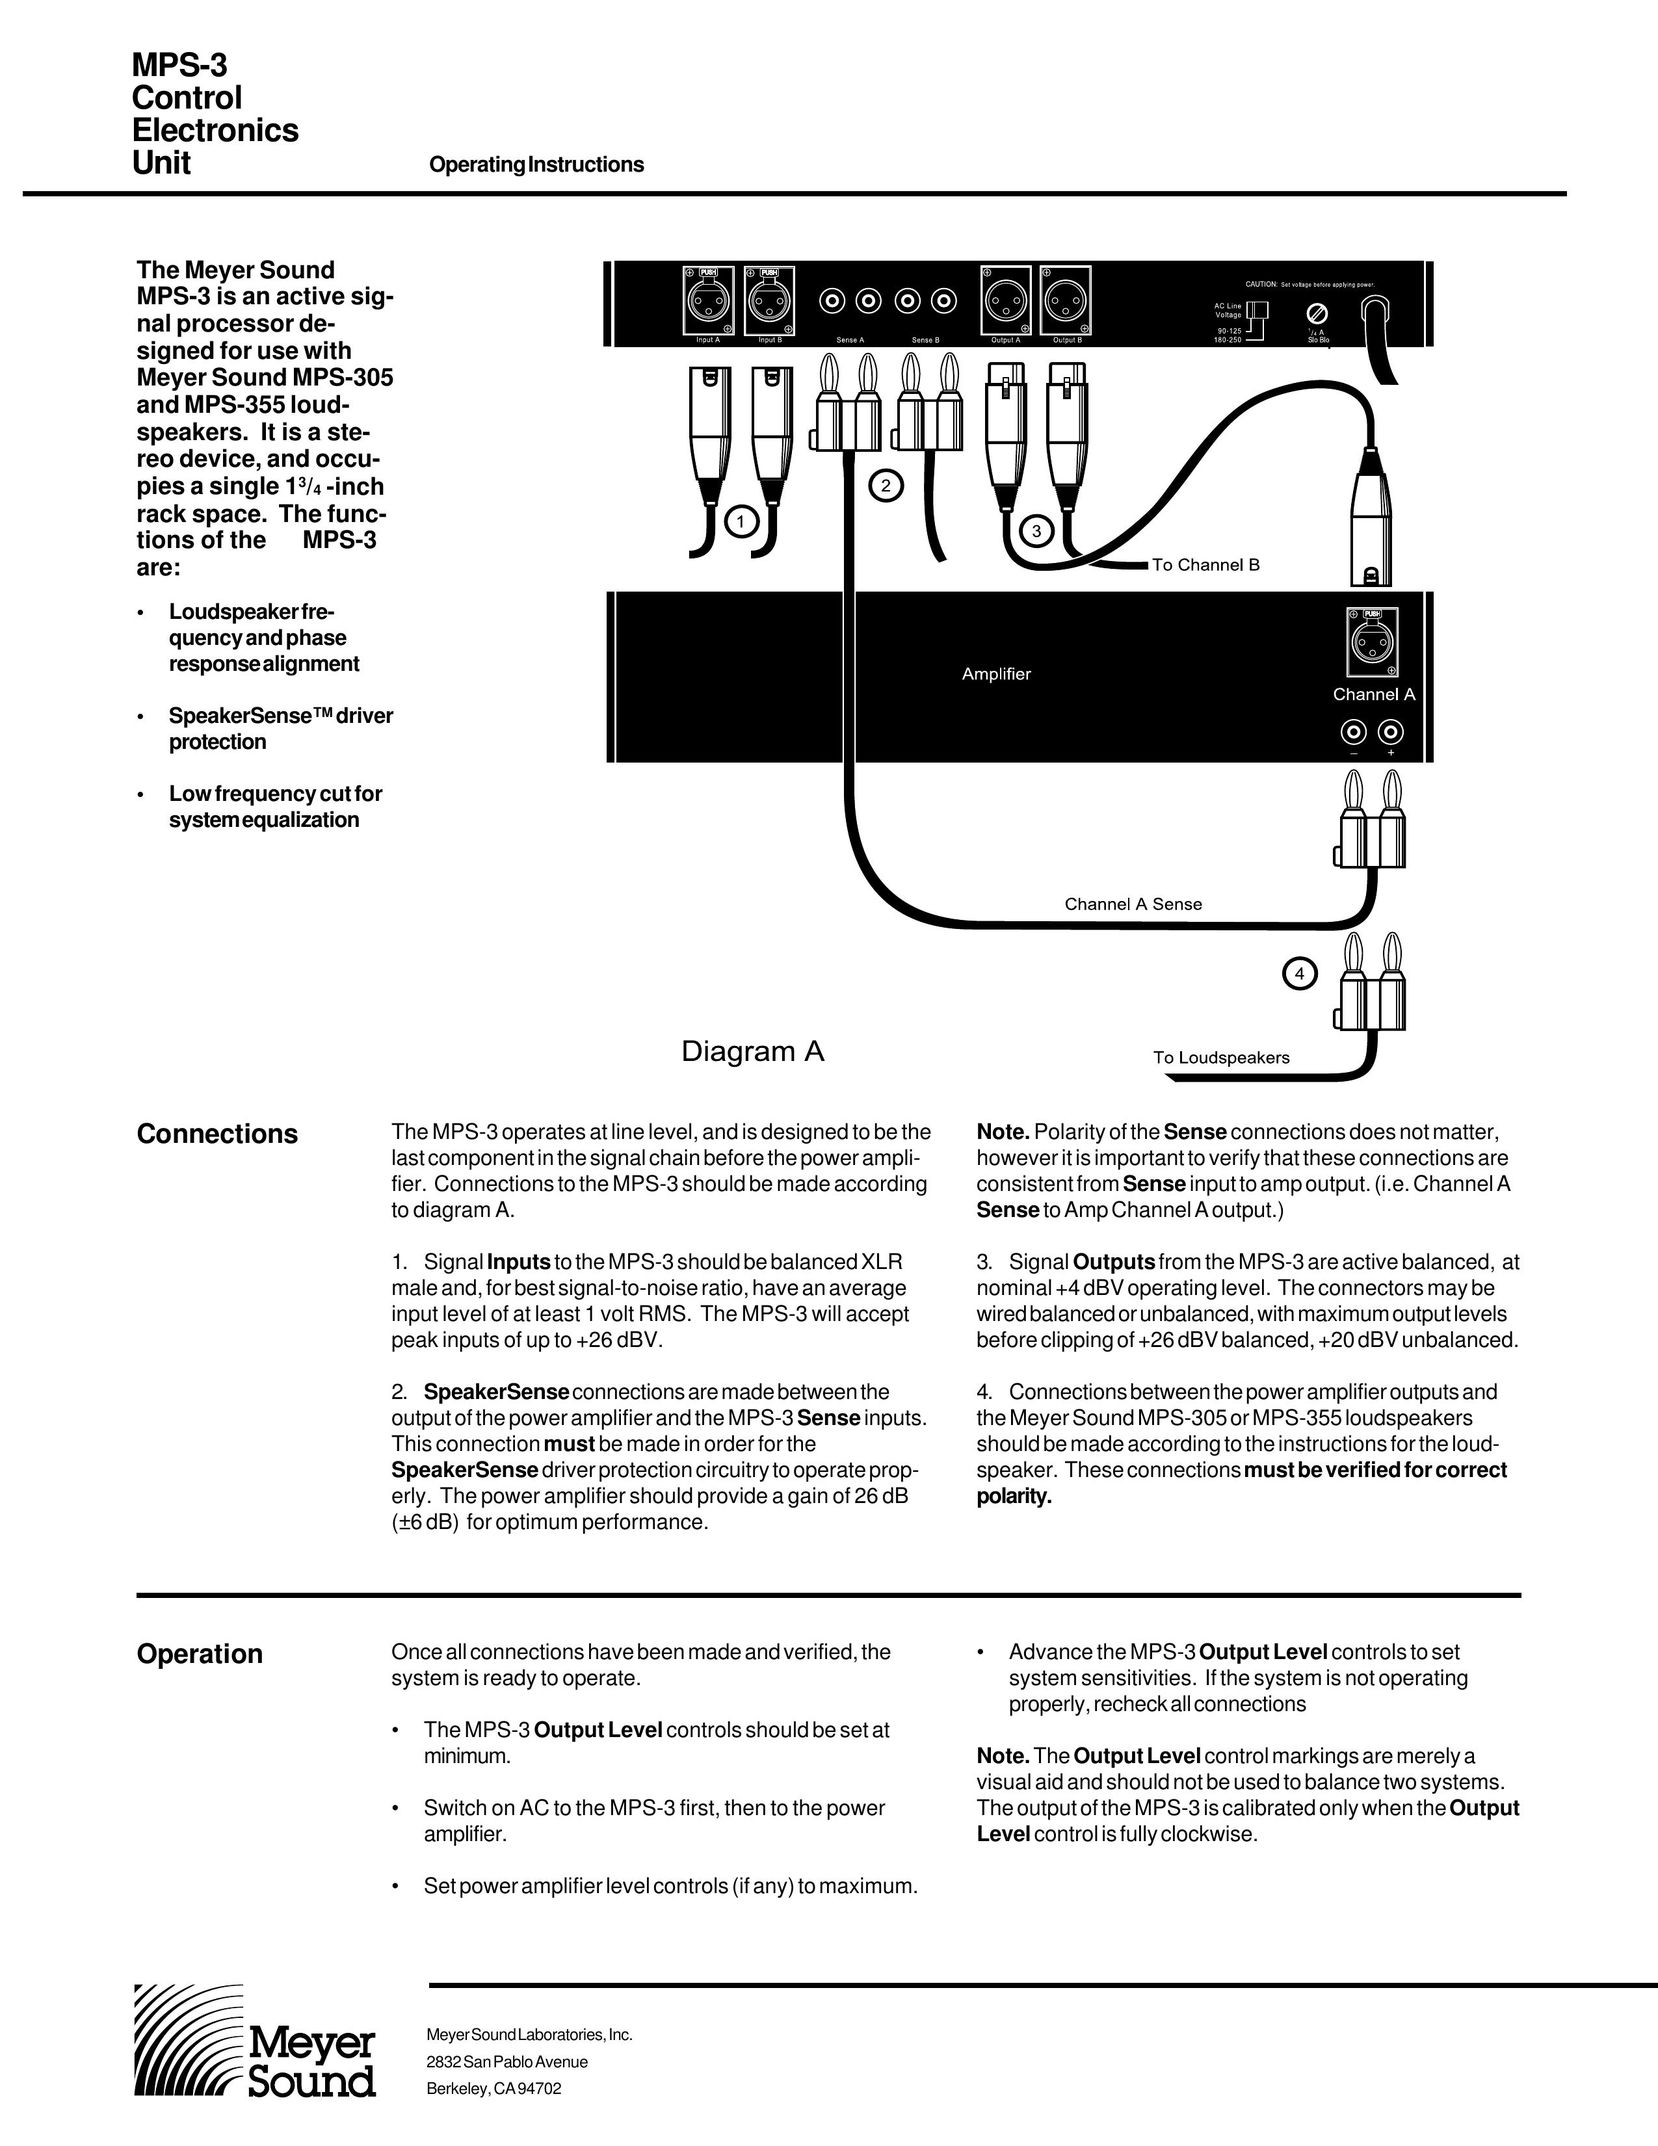 Meyer Sound MPS-3 Portable Speaker User Manual